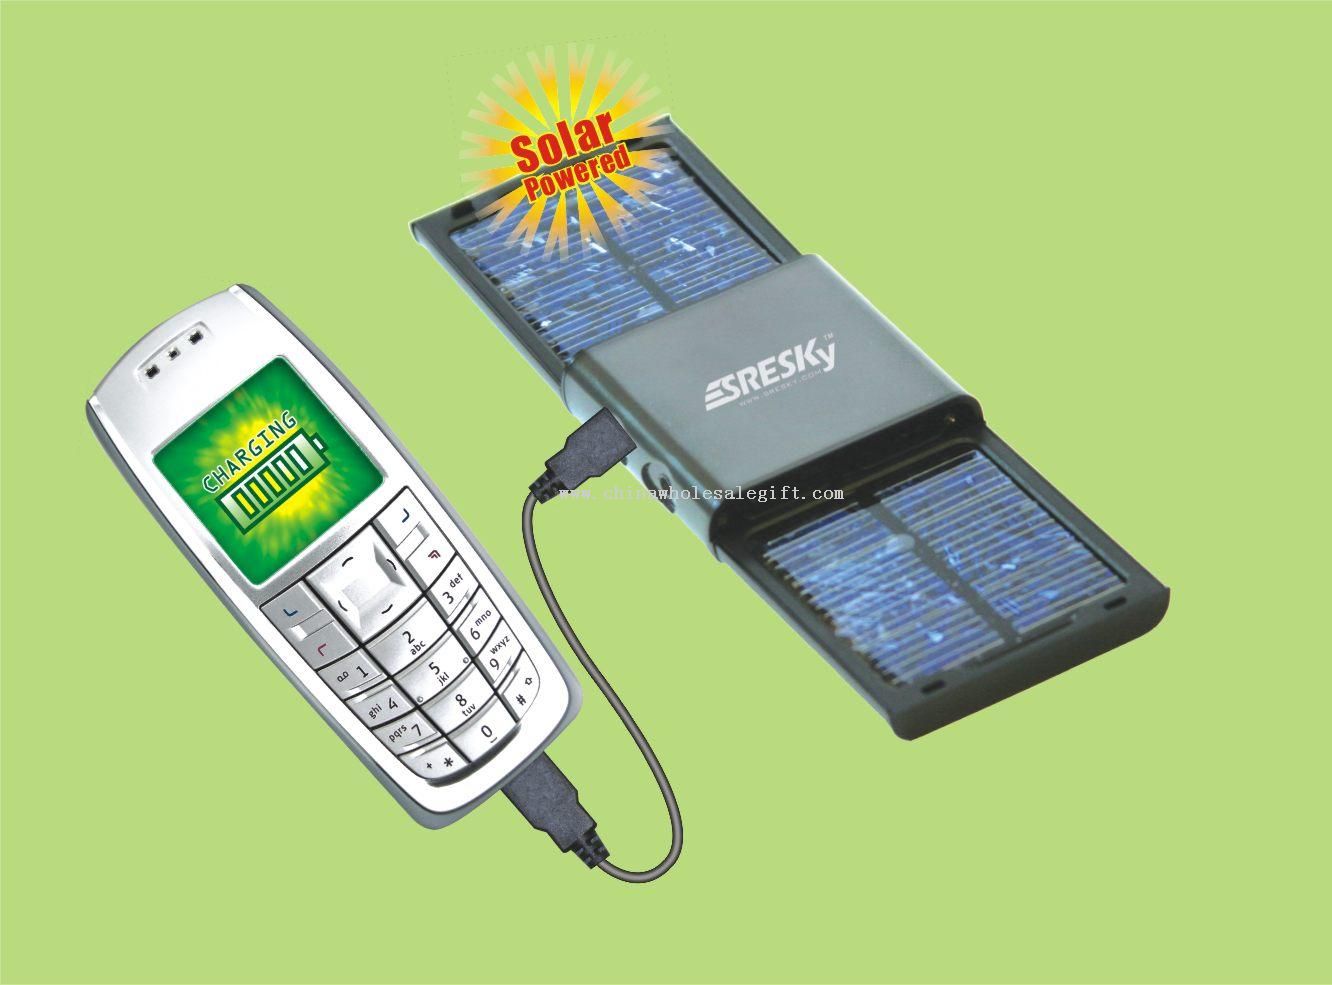 Pengisi Solar baterai telepon selular